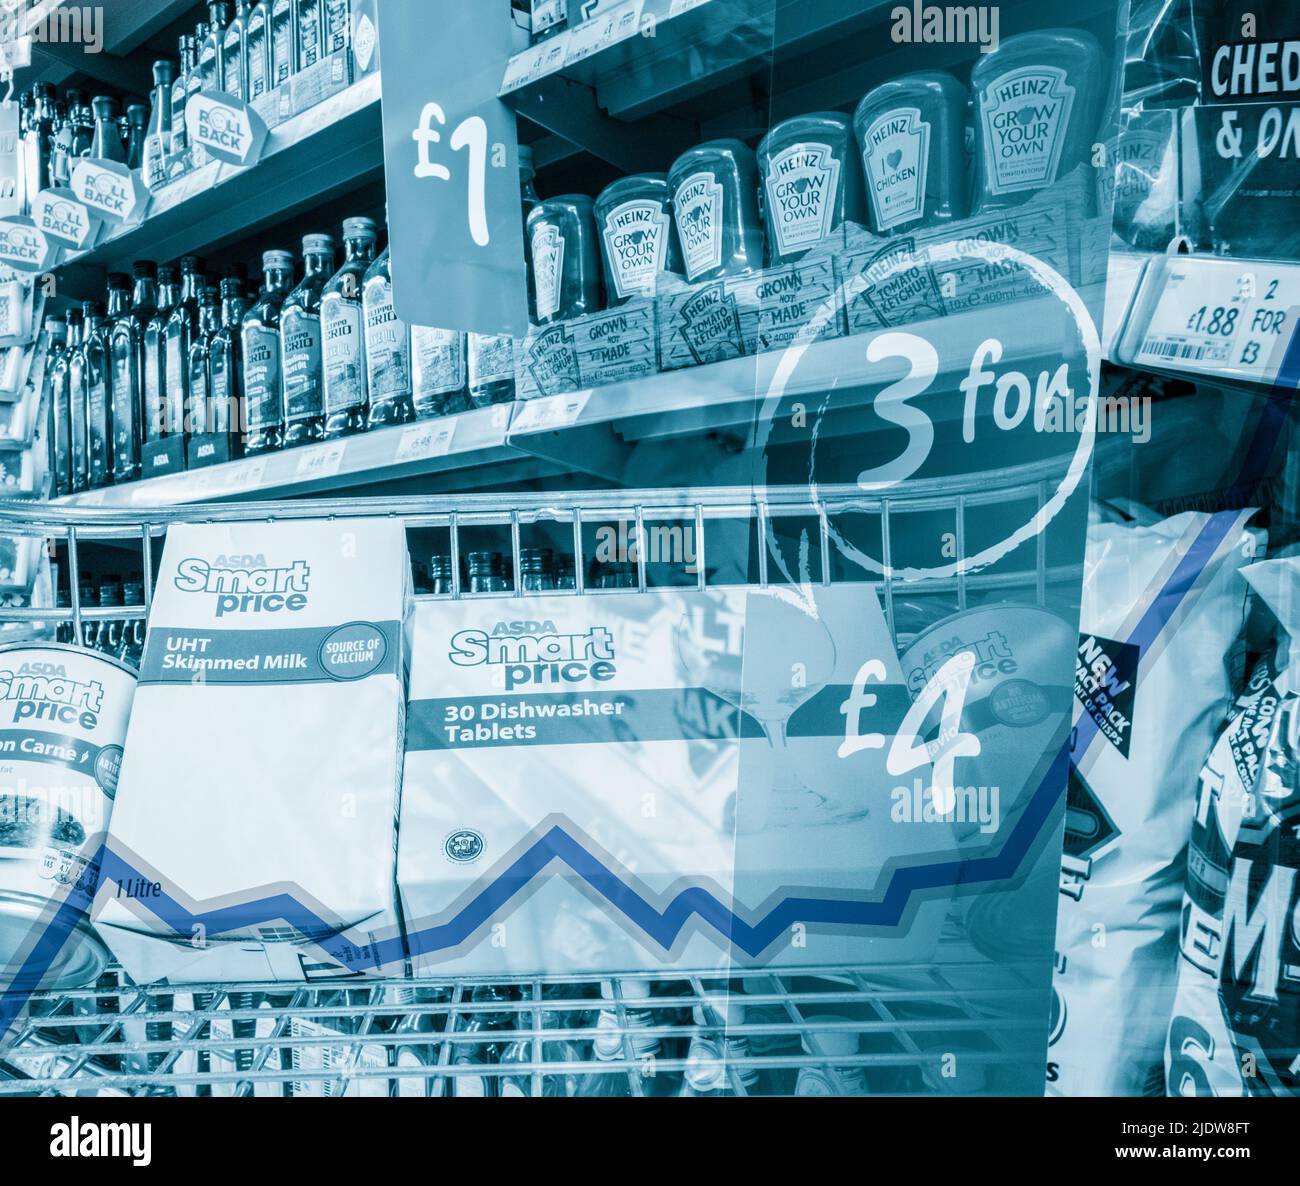 Asda eigene Marke smart Preis niedrigen Wert Bereich Artikel in Shopping Trolley in Asda Supermarkt. VEREINIGTES KÖNIGREICH. Inflationsdiagramm überlagert. Stockfoto